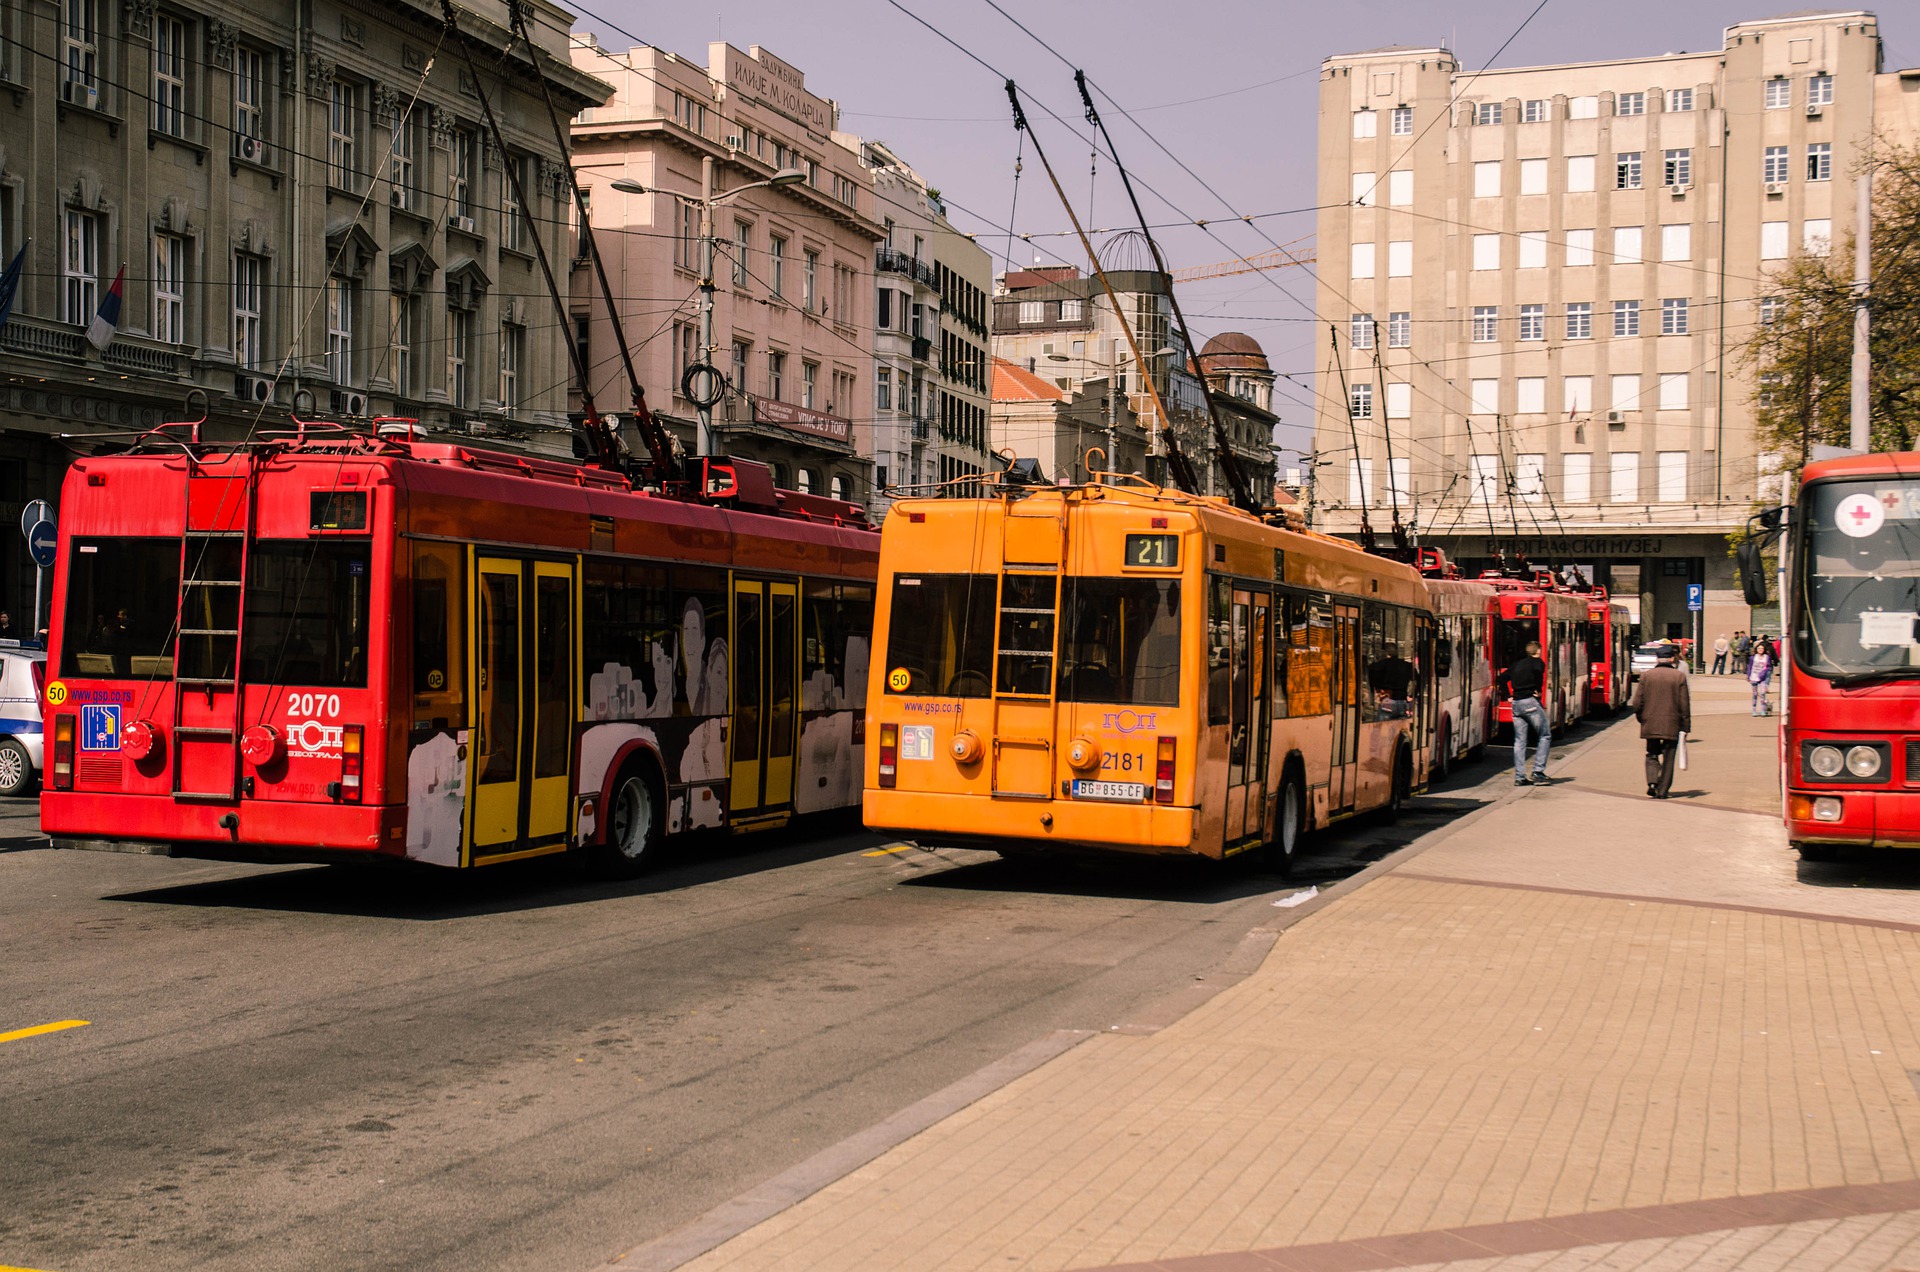 Beograd_trolejbus_javni prevoz_Pixabay.jpg